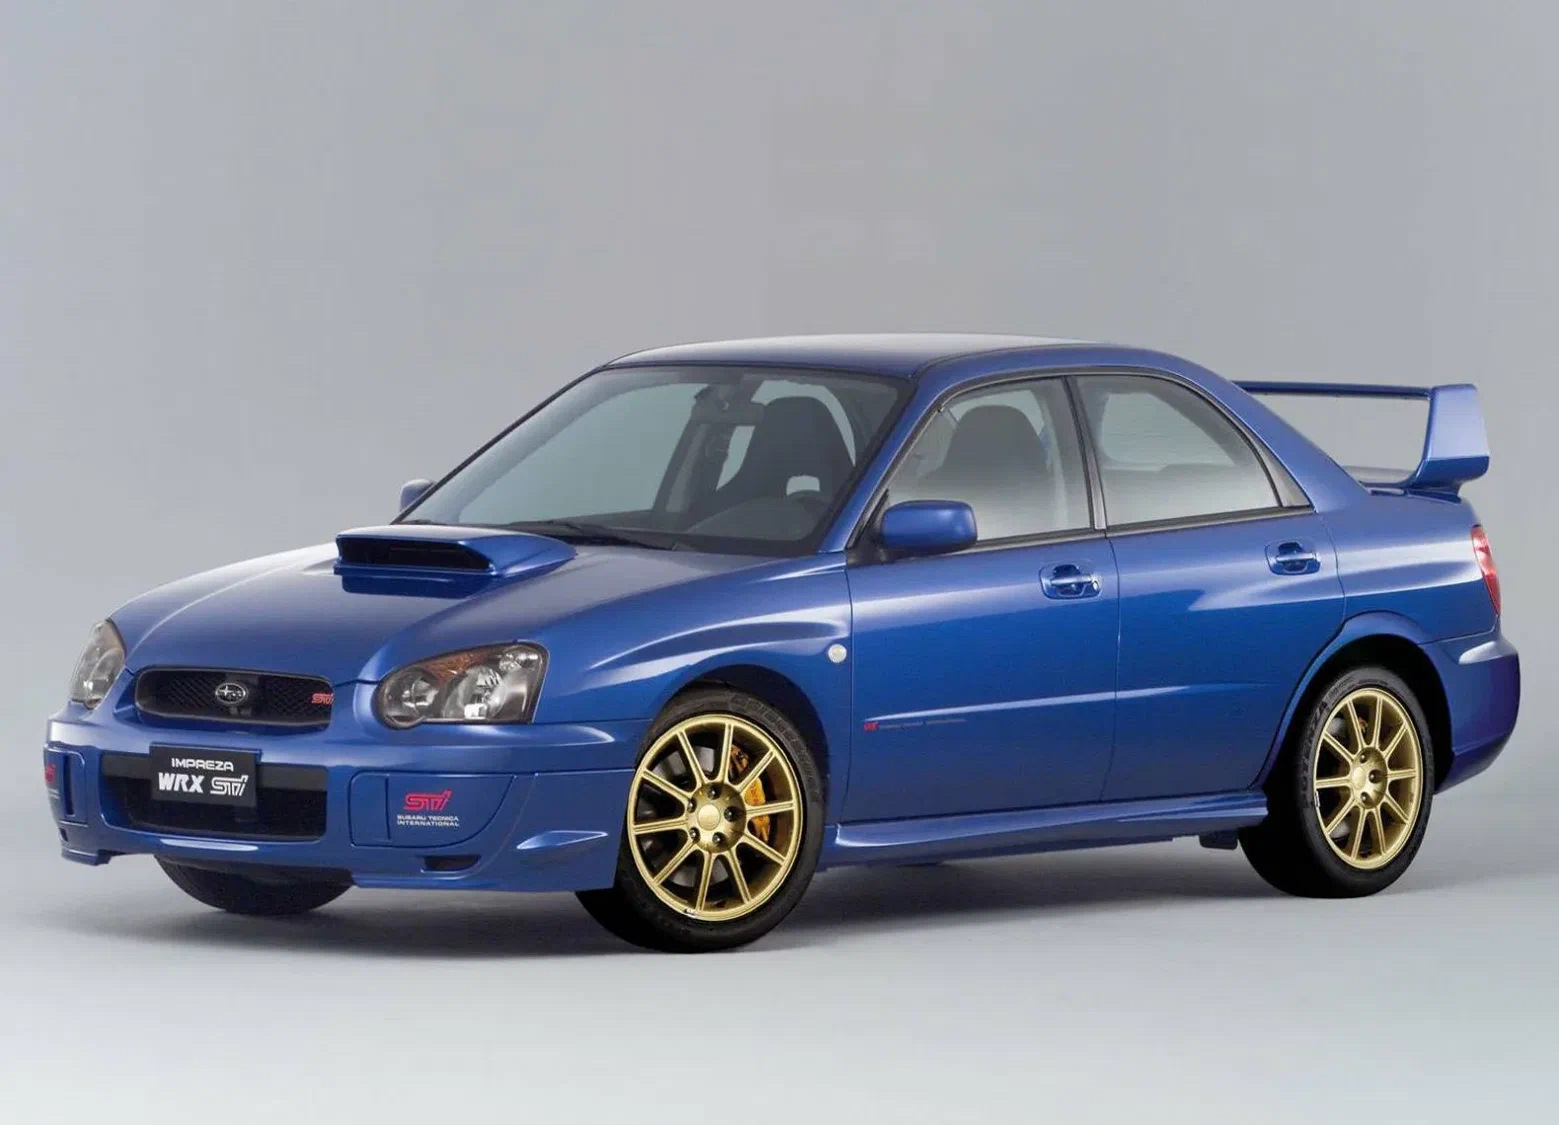 Subaru Impreza WRX STI 2004. Subaru Impreza WRX STI 2005. Subaru Impreza WRX 2004. Subaru Impreza WRX STI 2003. Wrx sti 2004